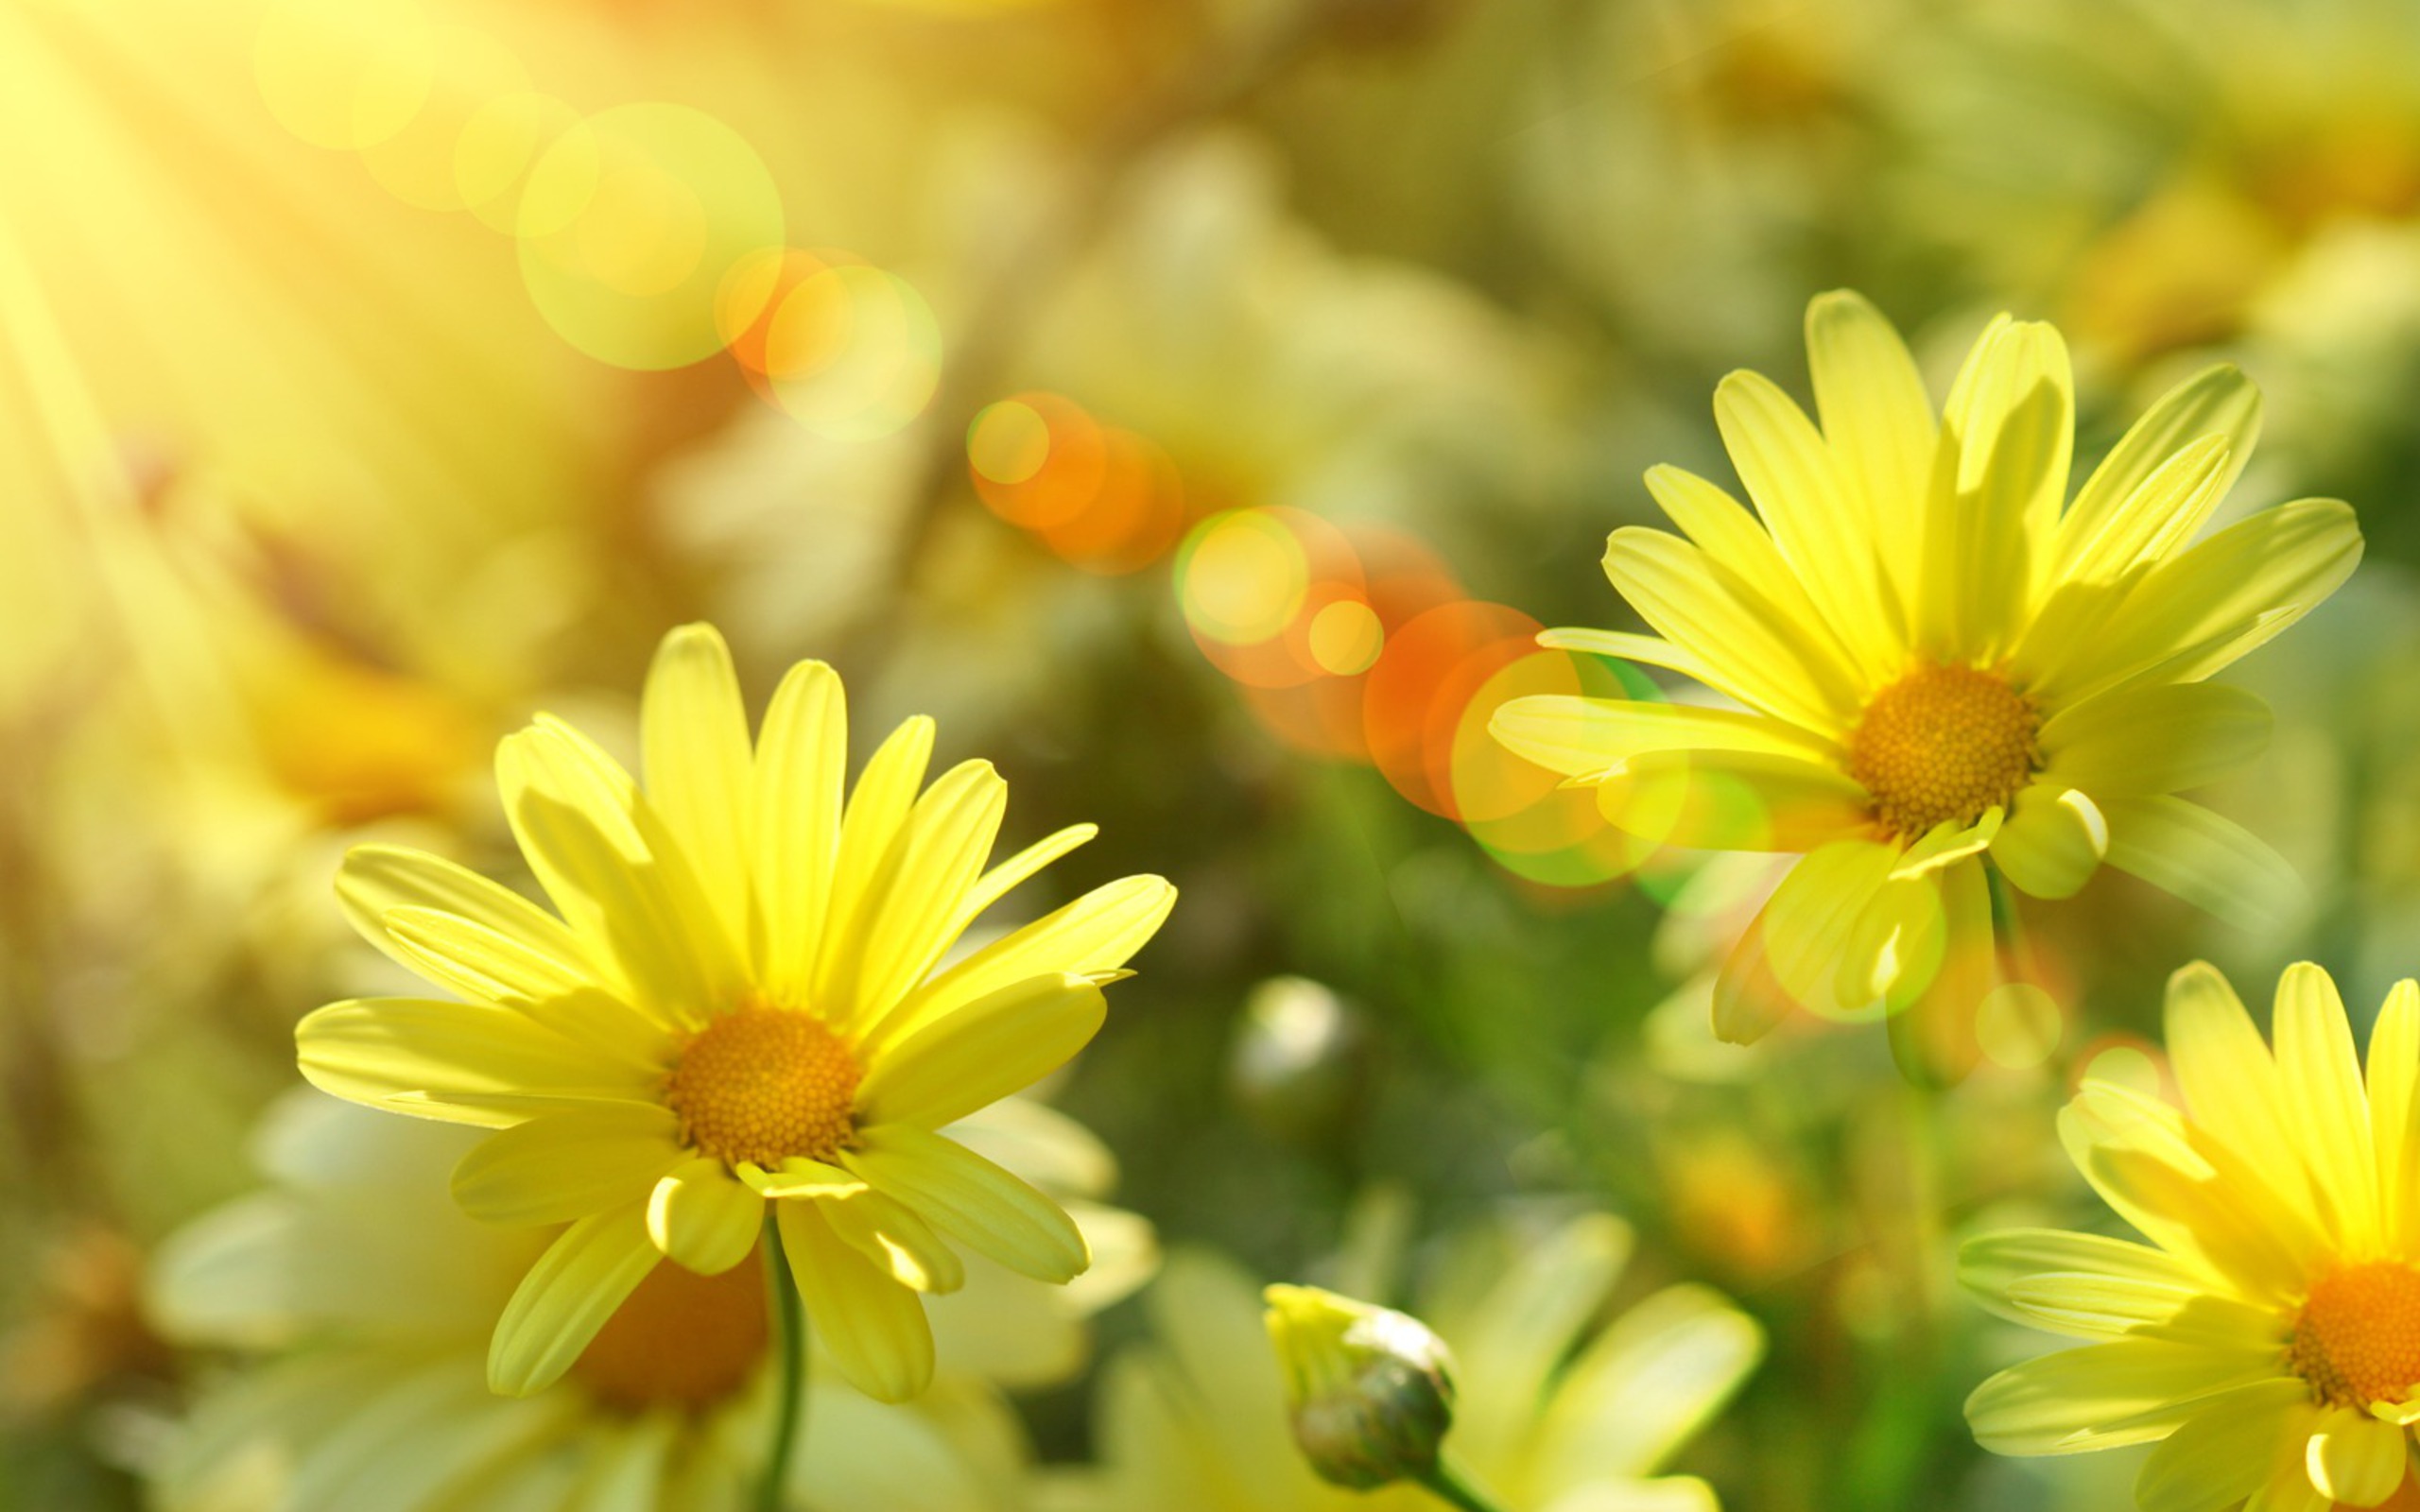 Солнечного настроения в душе. Солнечный цветок. Цветы и солнце. Солнечный день. Цветы в лучах солнца.